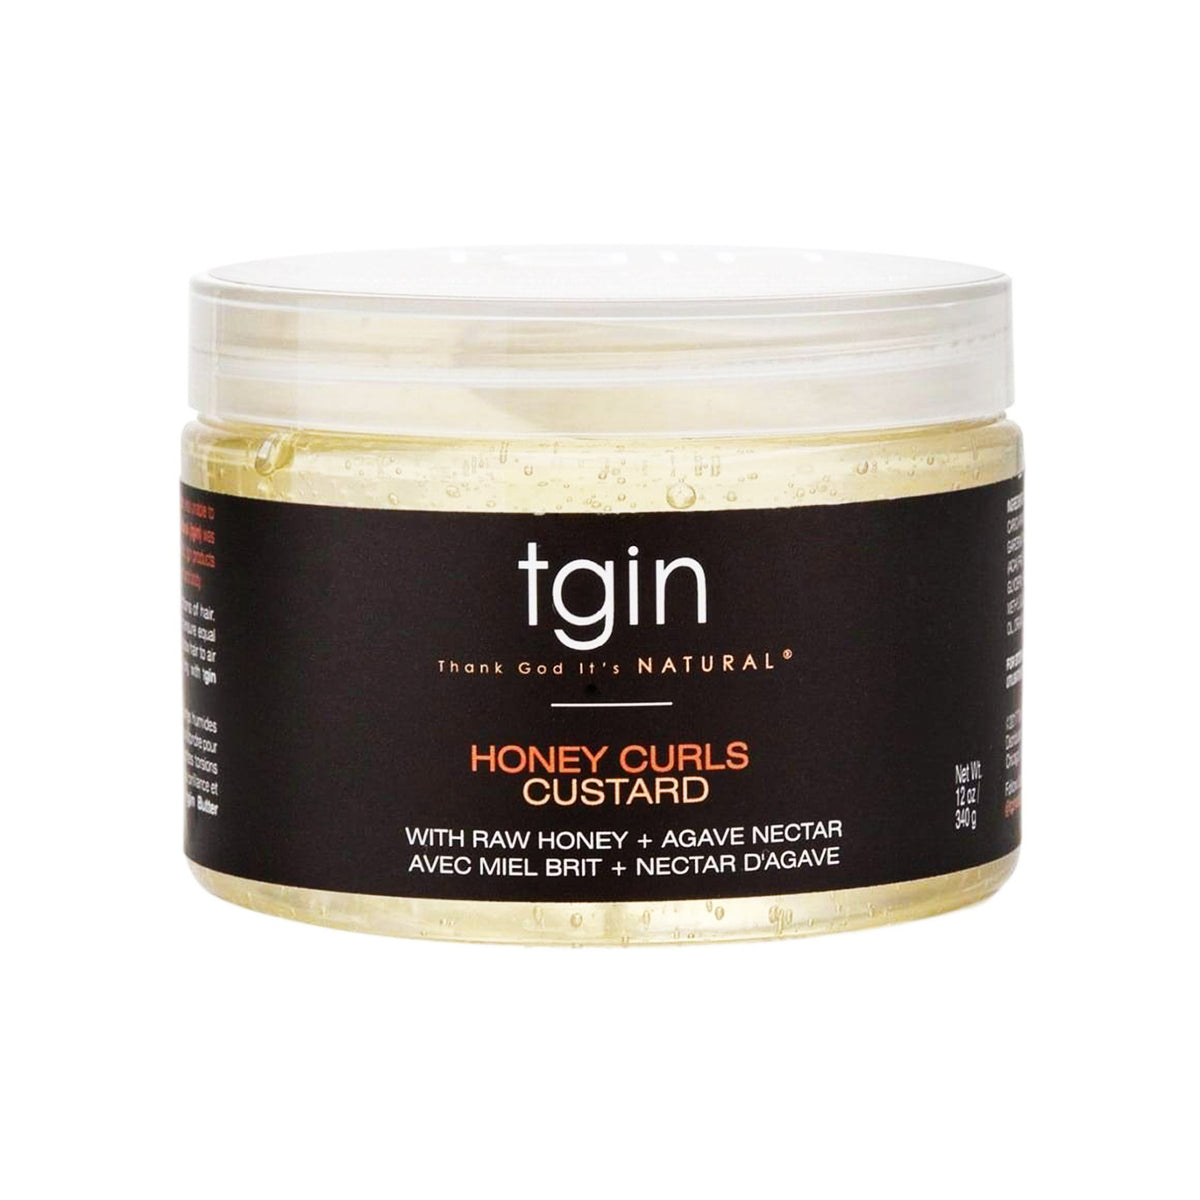 tgin Honey Curls Custard 12 oz With Raw Honey - AQ Online